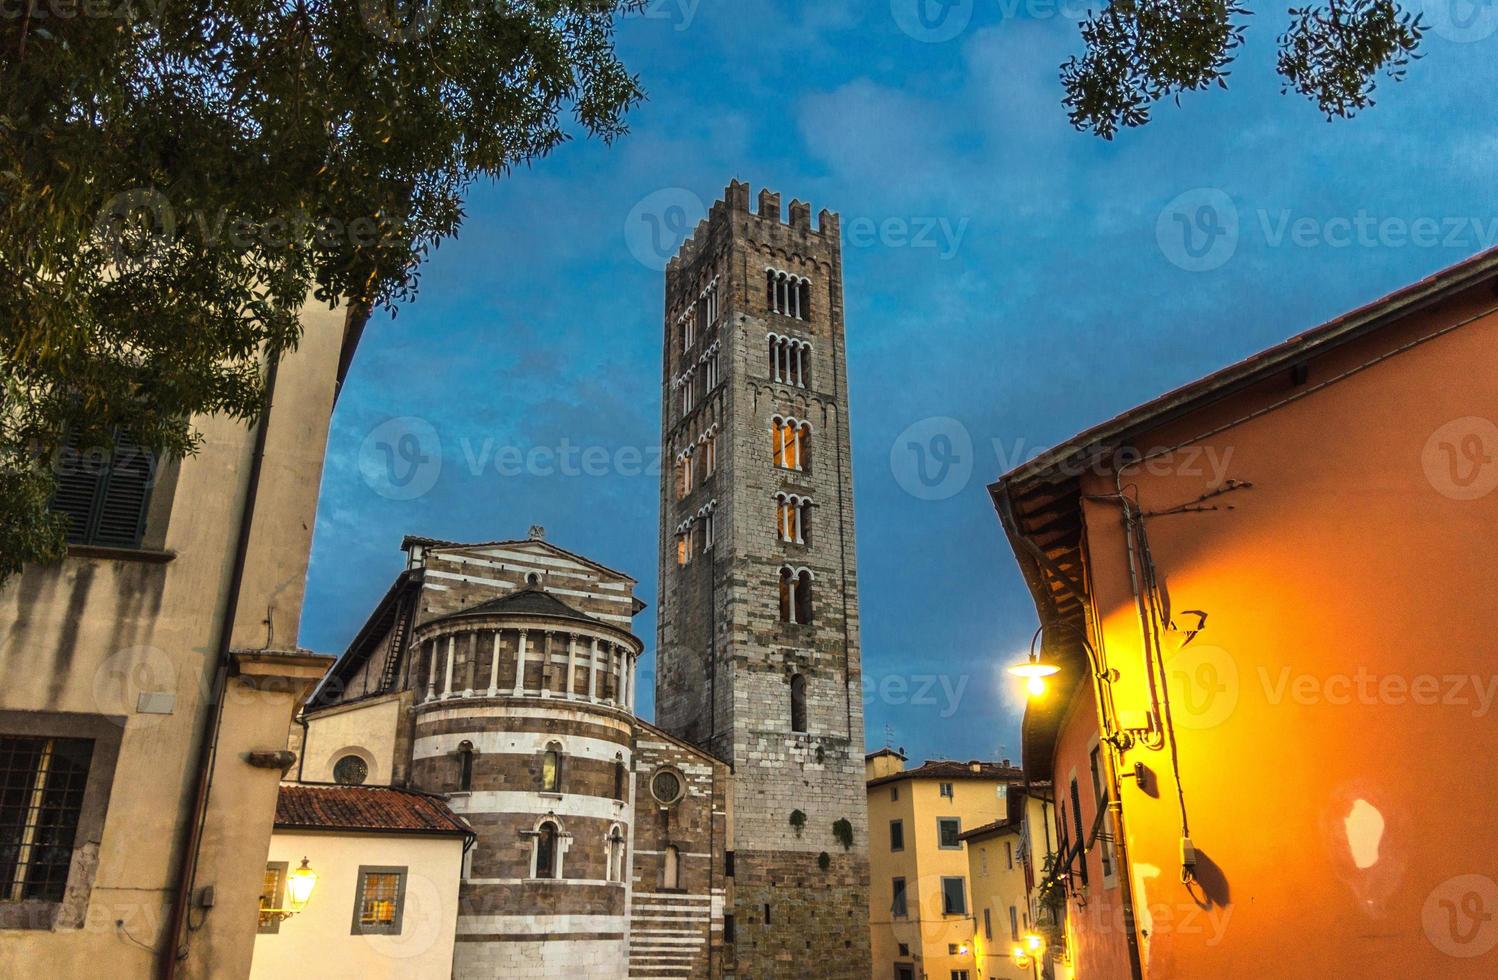 klokkentoren van chiesa di san frediano katholieke kerk en gebouw met straatlantaarnlicht op het plein piazza del collegio foto